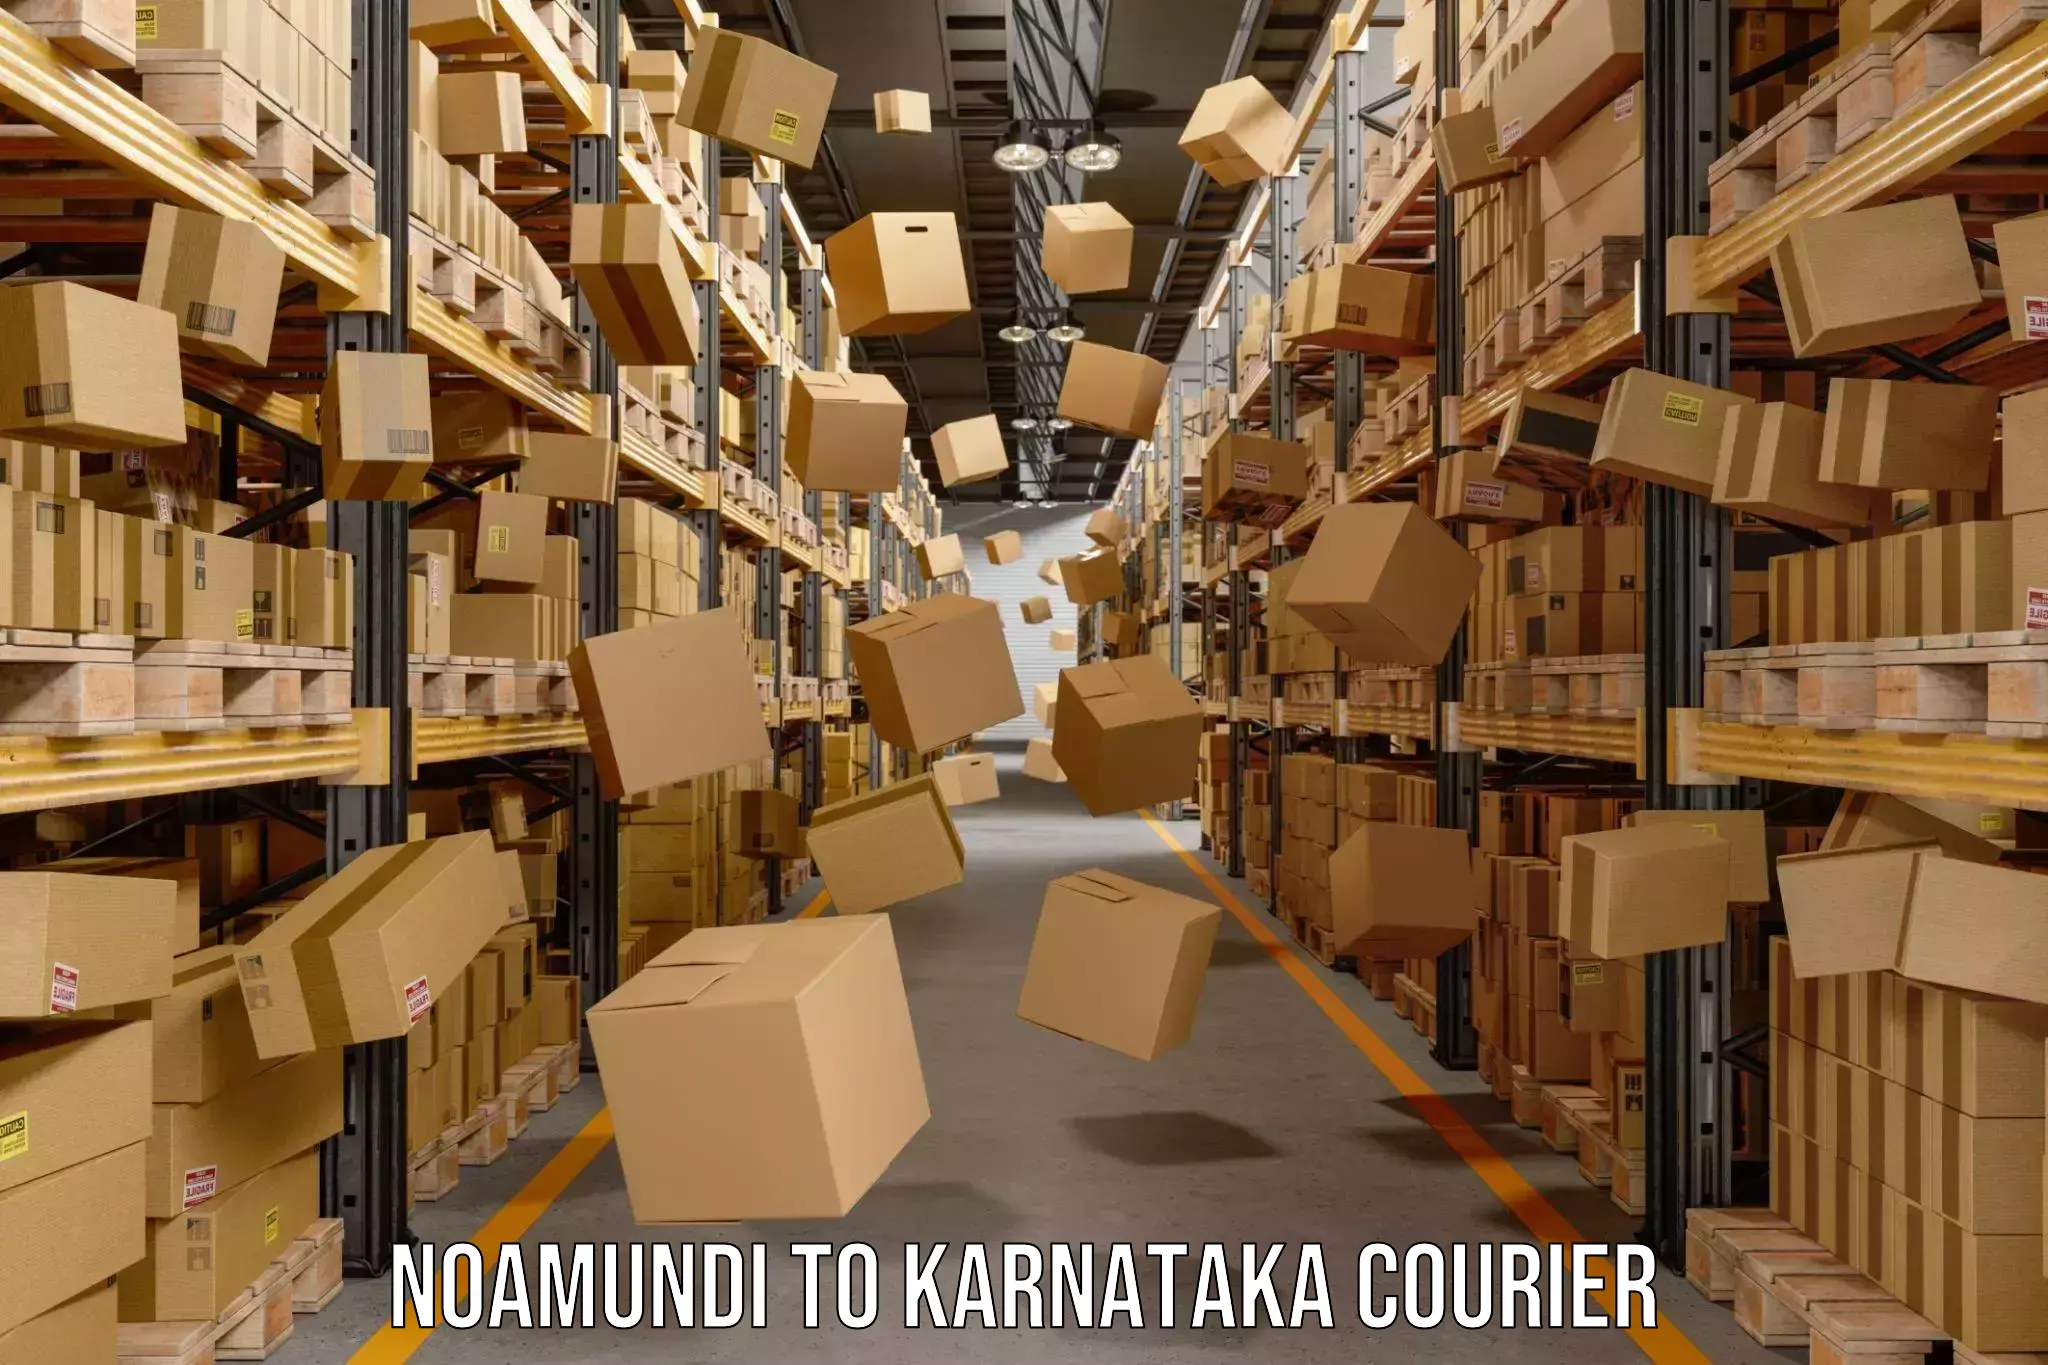 Courier service comparison Noamundi to Manvi